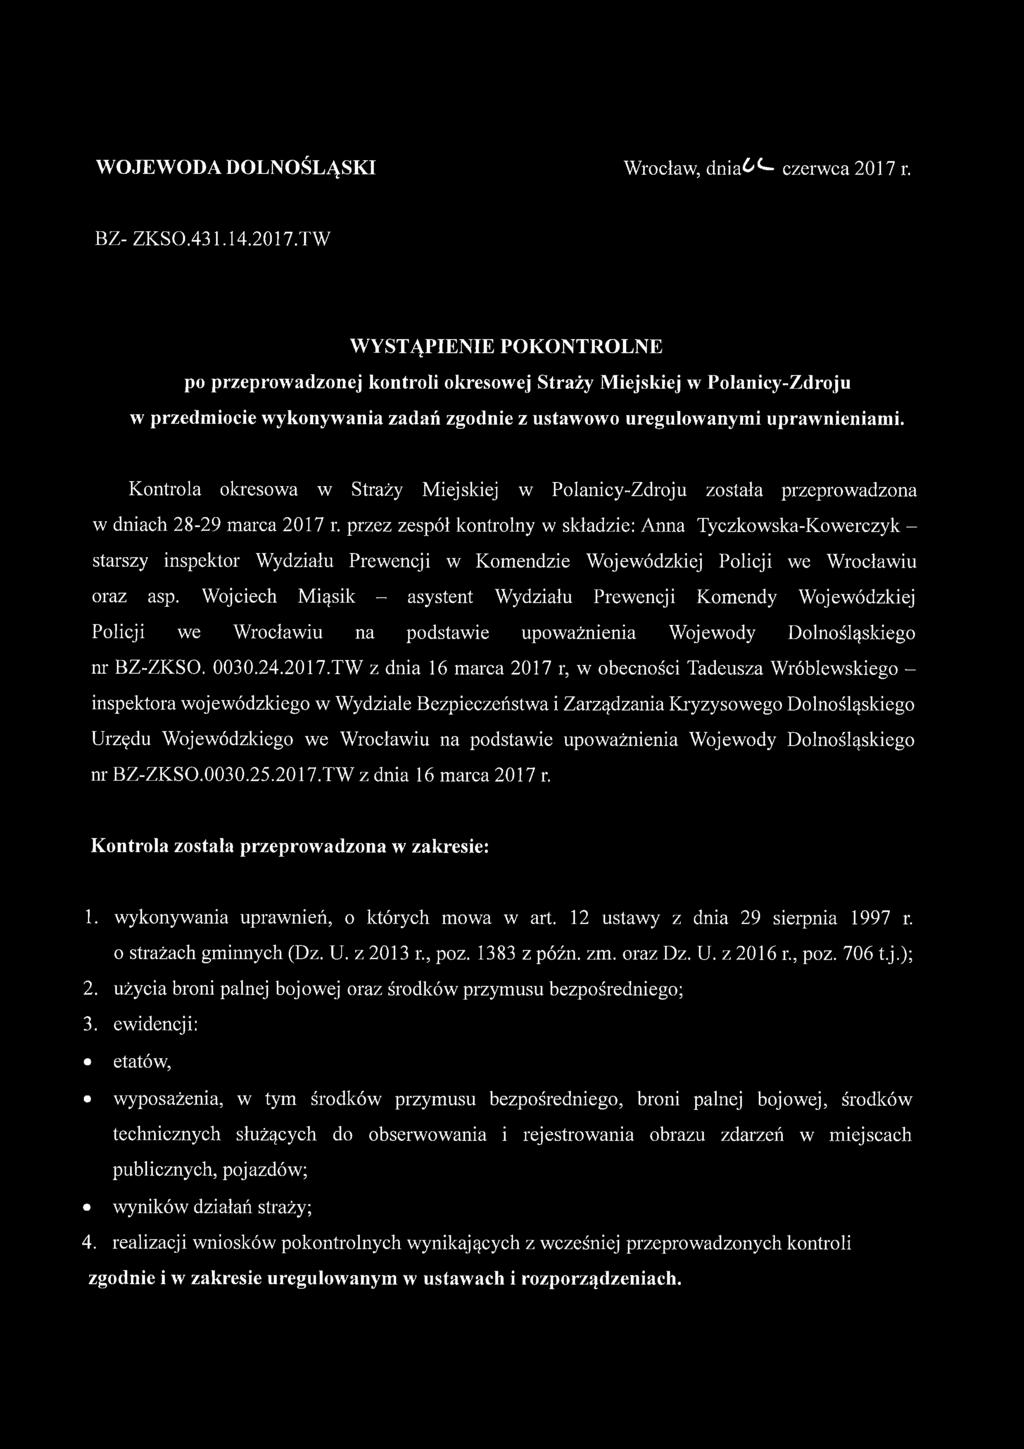 TW WYSTĄPIENIE POKONTROLNE po przeprowadzonej kontroli okresowej Straży Miejskiej w Polanicy-Zdroju w przedmiocie wykonywania zadań zgodnie z ustawowo uregulowanymi uprawnieniami.